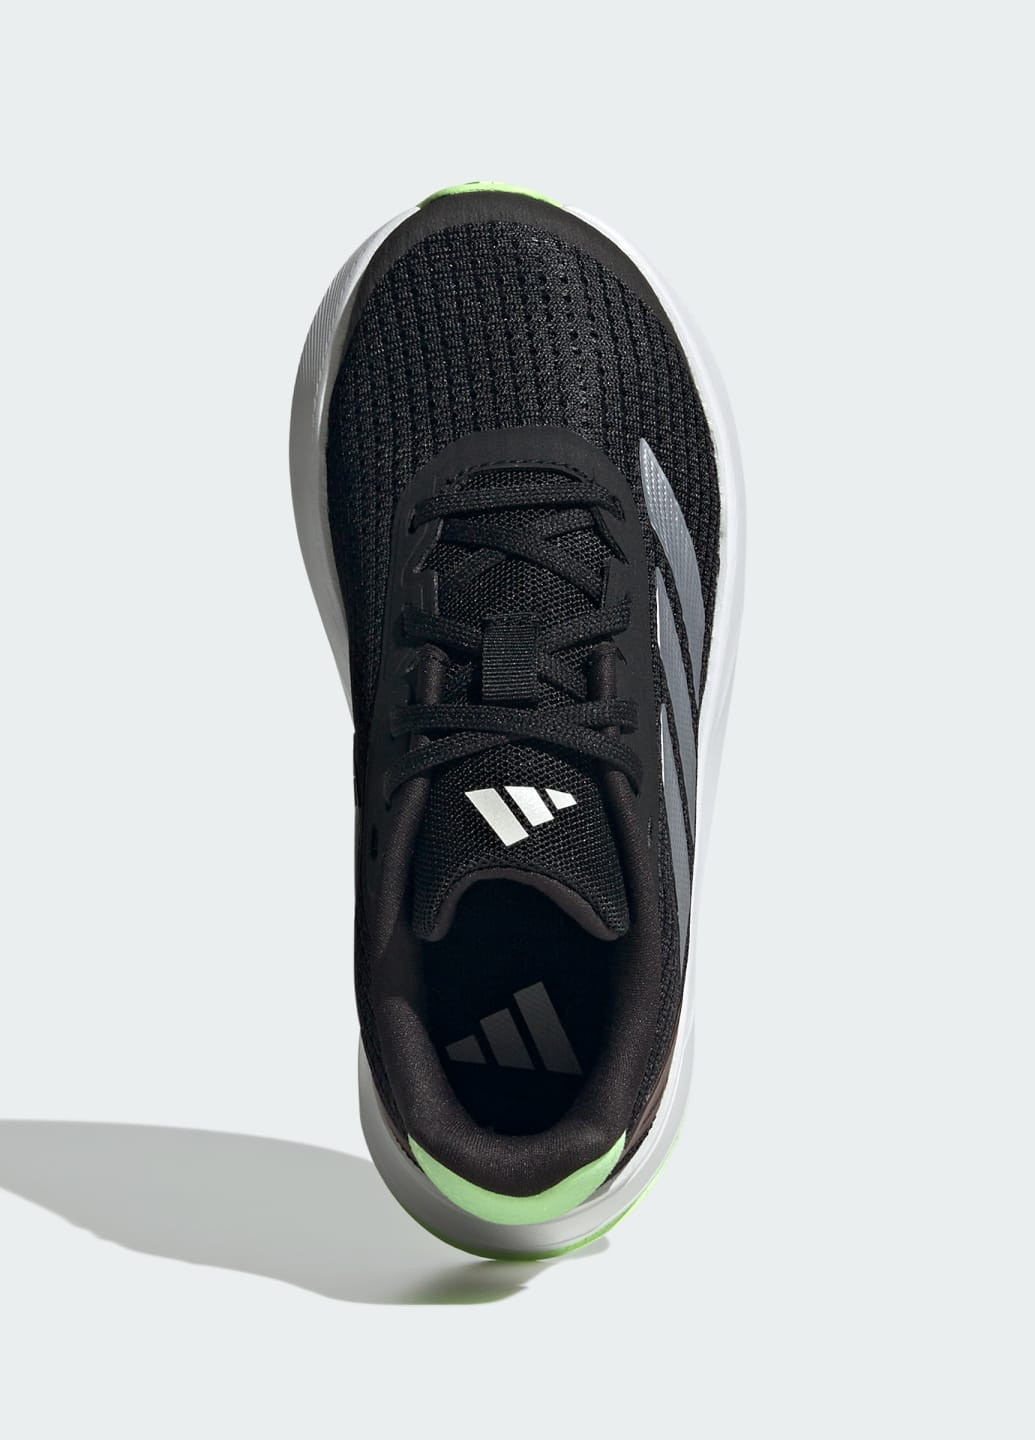 Черные всесезонные кроссовки duramo sl adidas